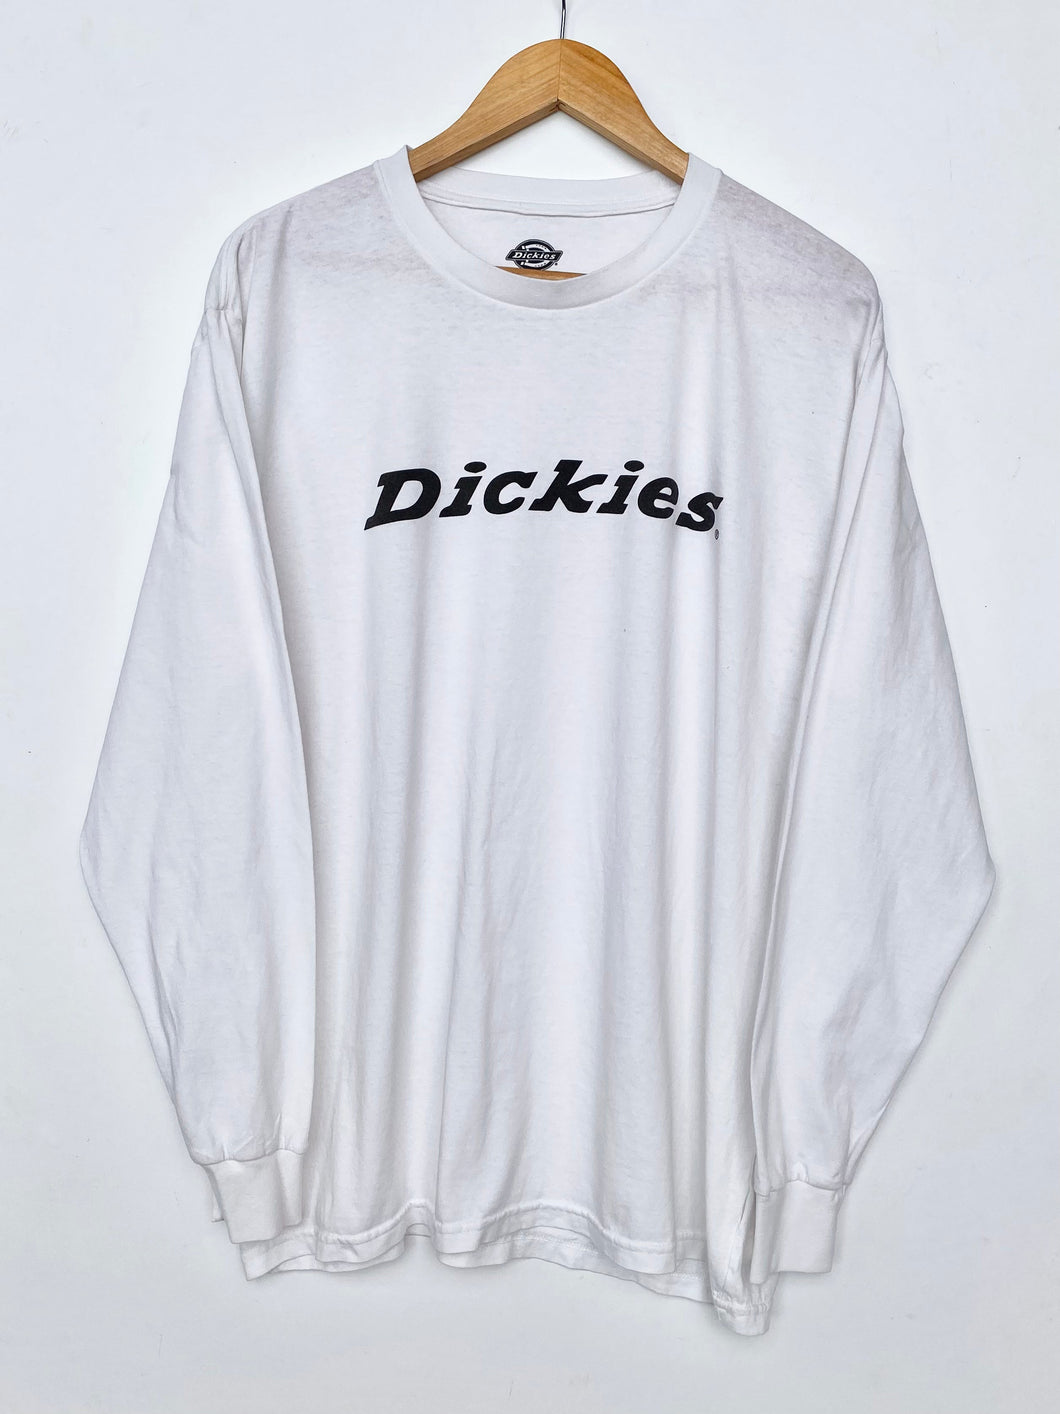 Dickies Long Sleeve T-shirt (L)